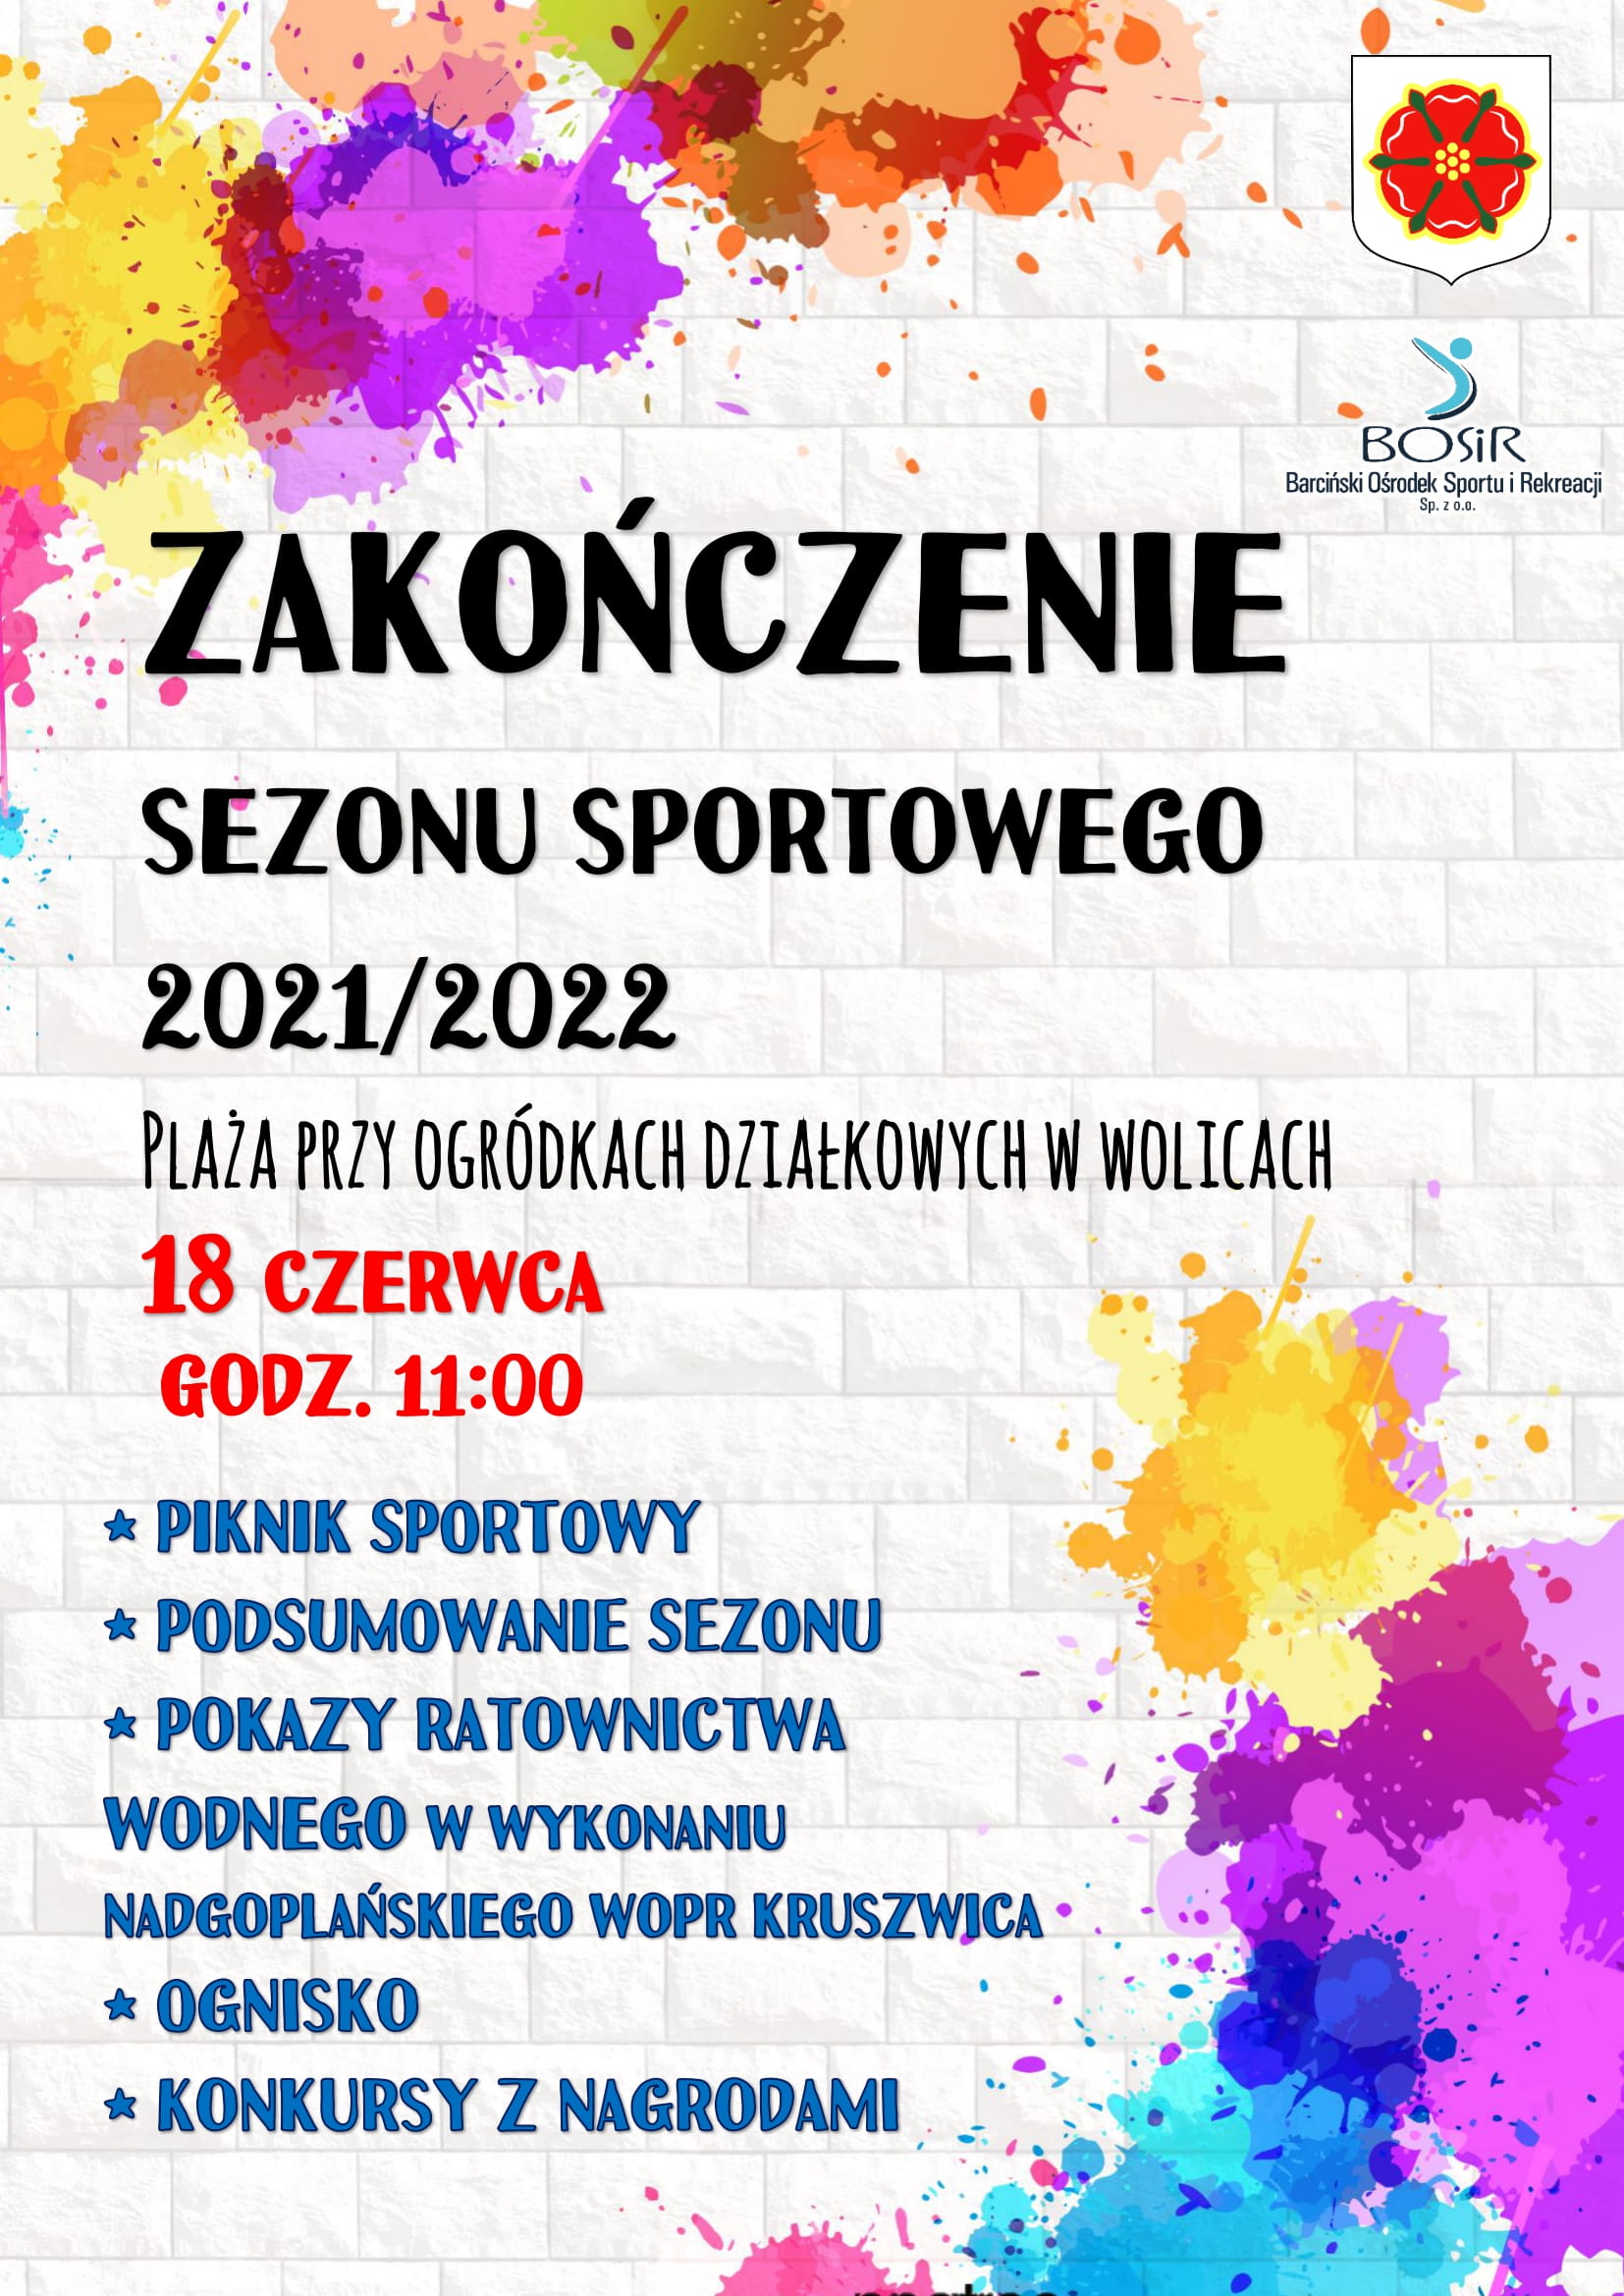 You are currently viewing Zakończenie sezou sportowego 2021/2022.